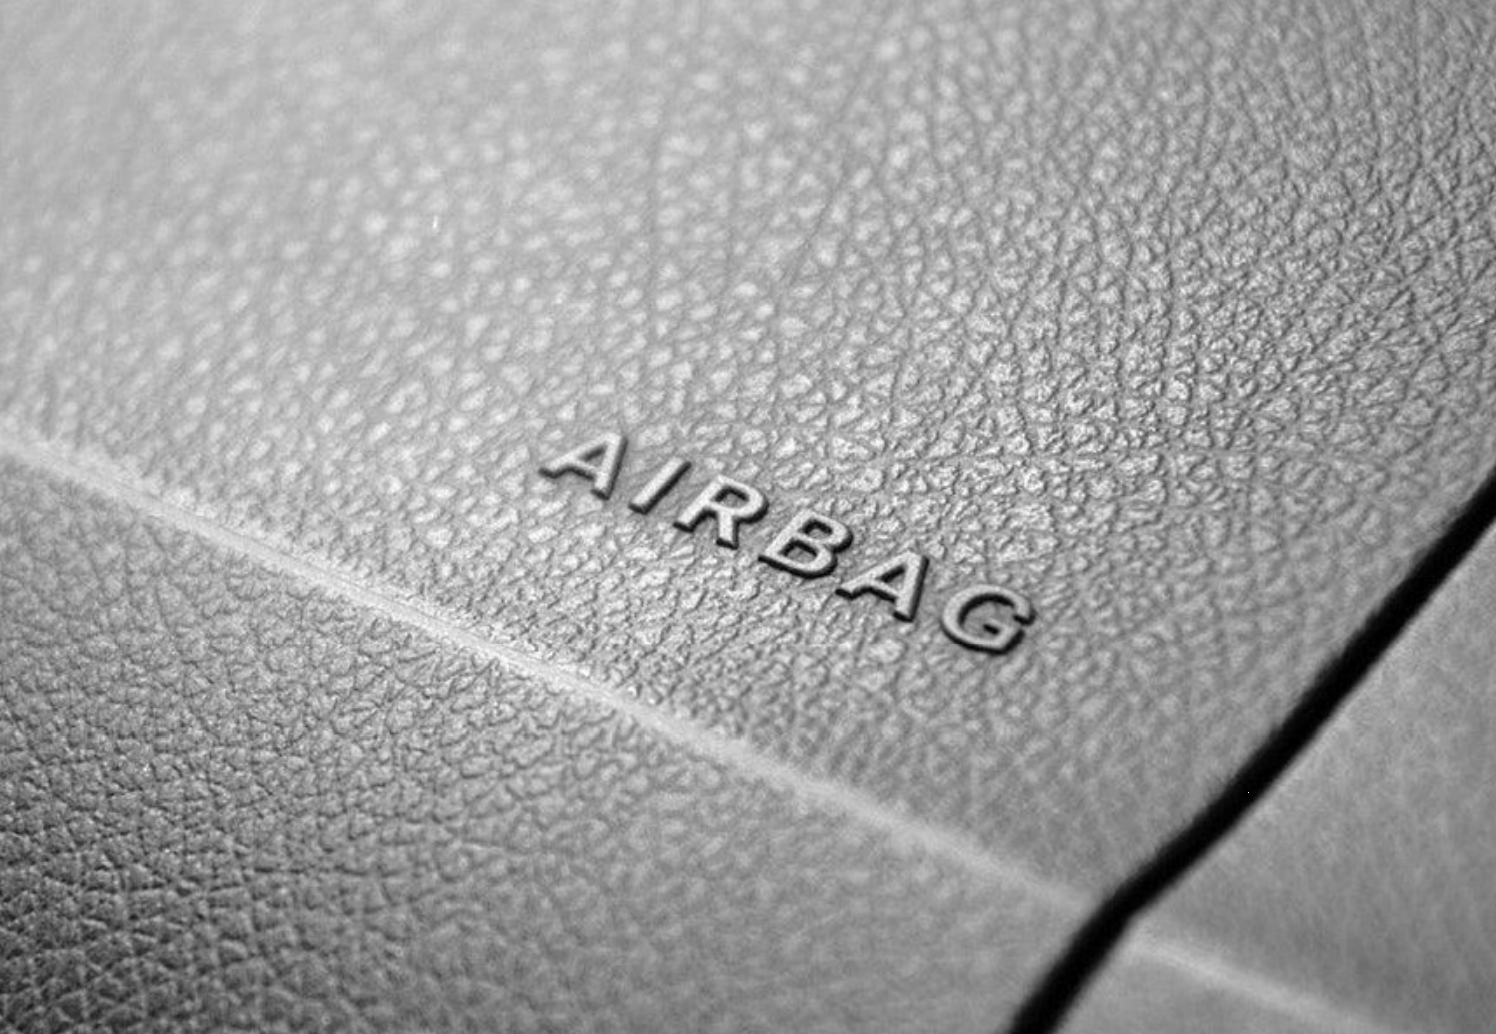 Das Airbag-System trägt zur Sicherheit im Straßenverkehr bei. Bei Airbagbank erfahren Sie alles über Funktion, Bestandteile und diverse Airbag-Arten.